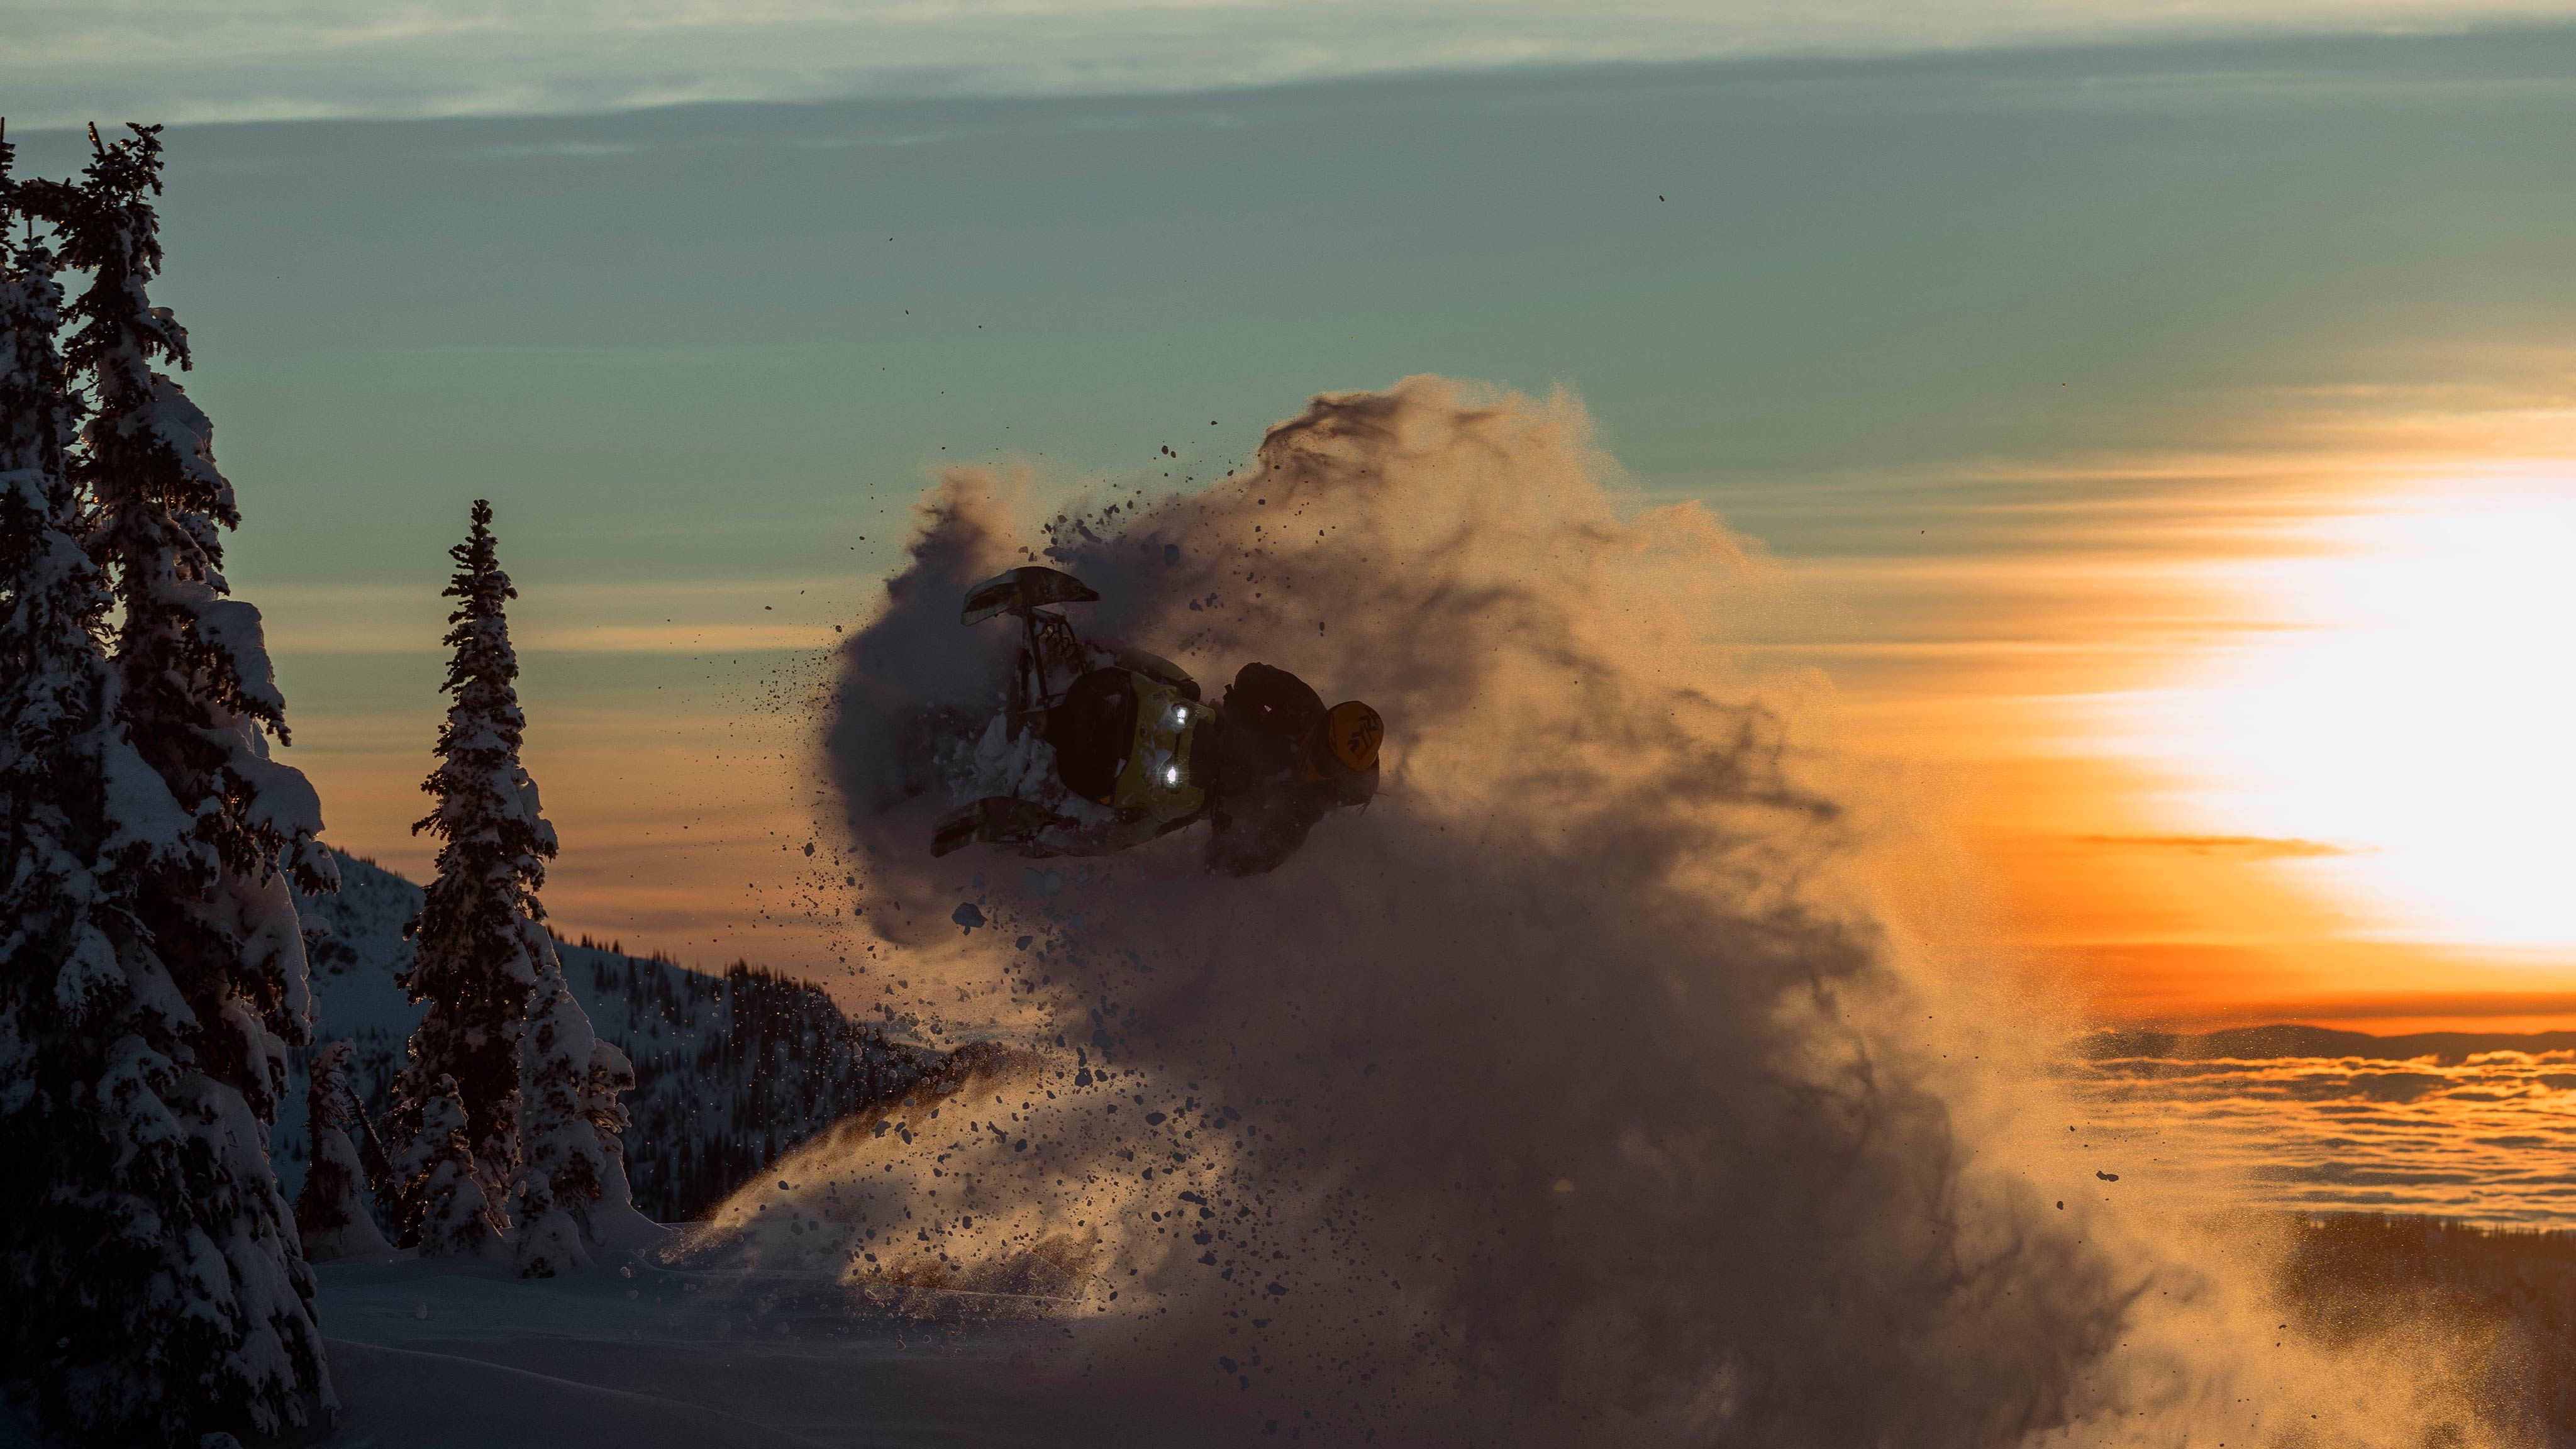 2025 Ski-Doo Freeride snowmobile in mid-air